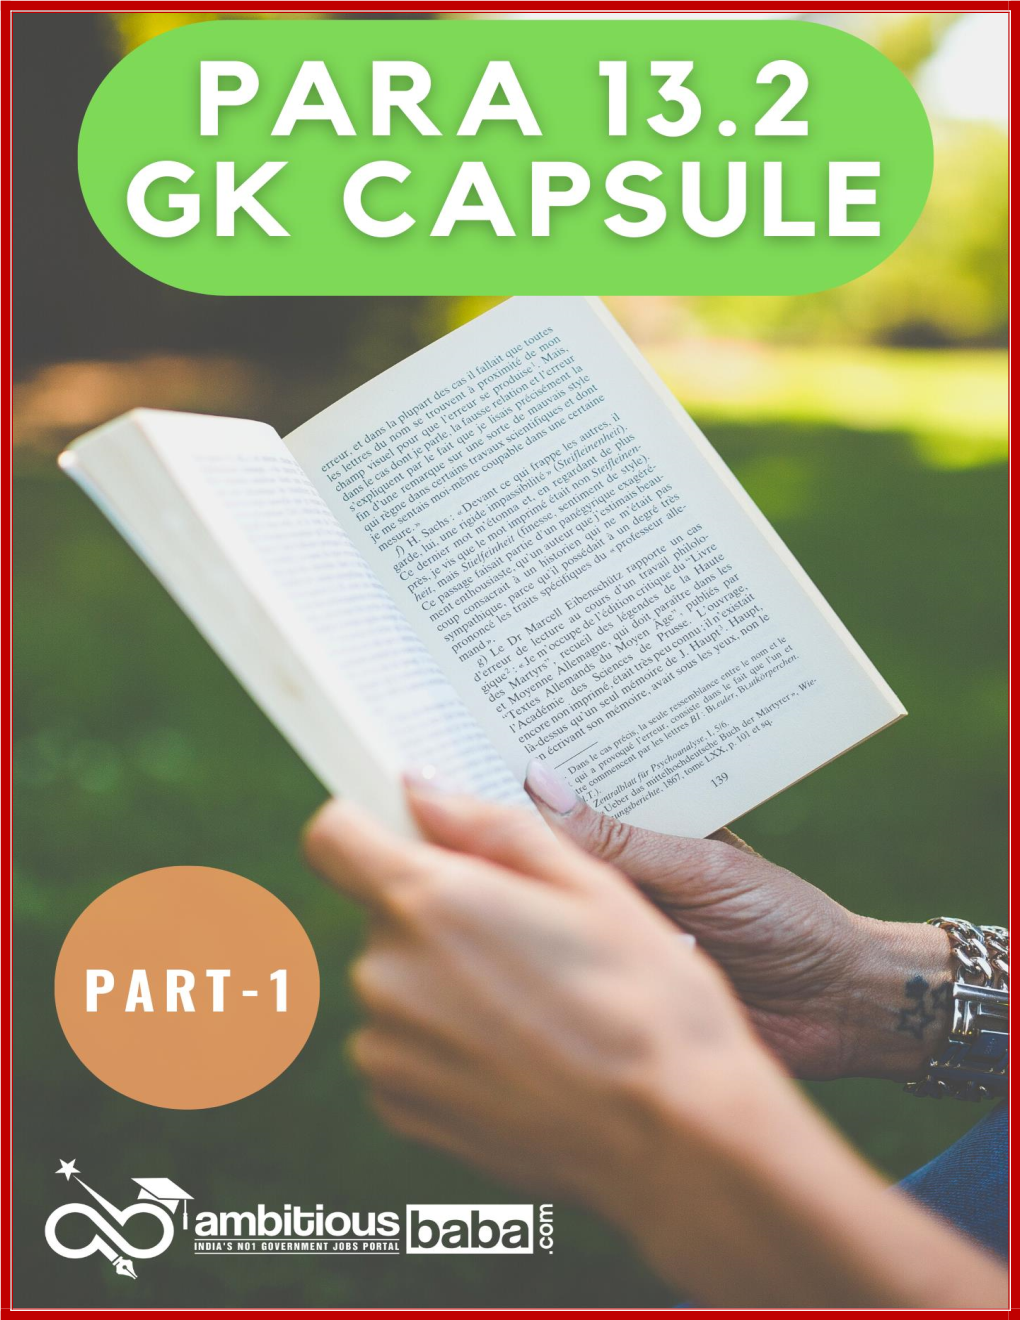 Download Para 13.2 GK Capsule Part-1